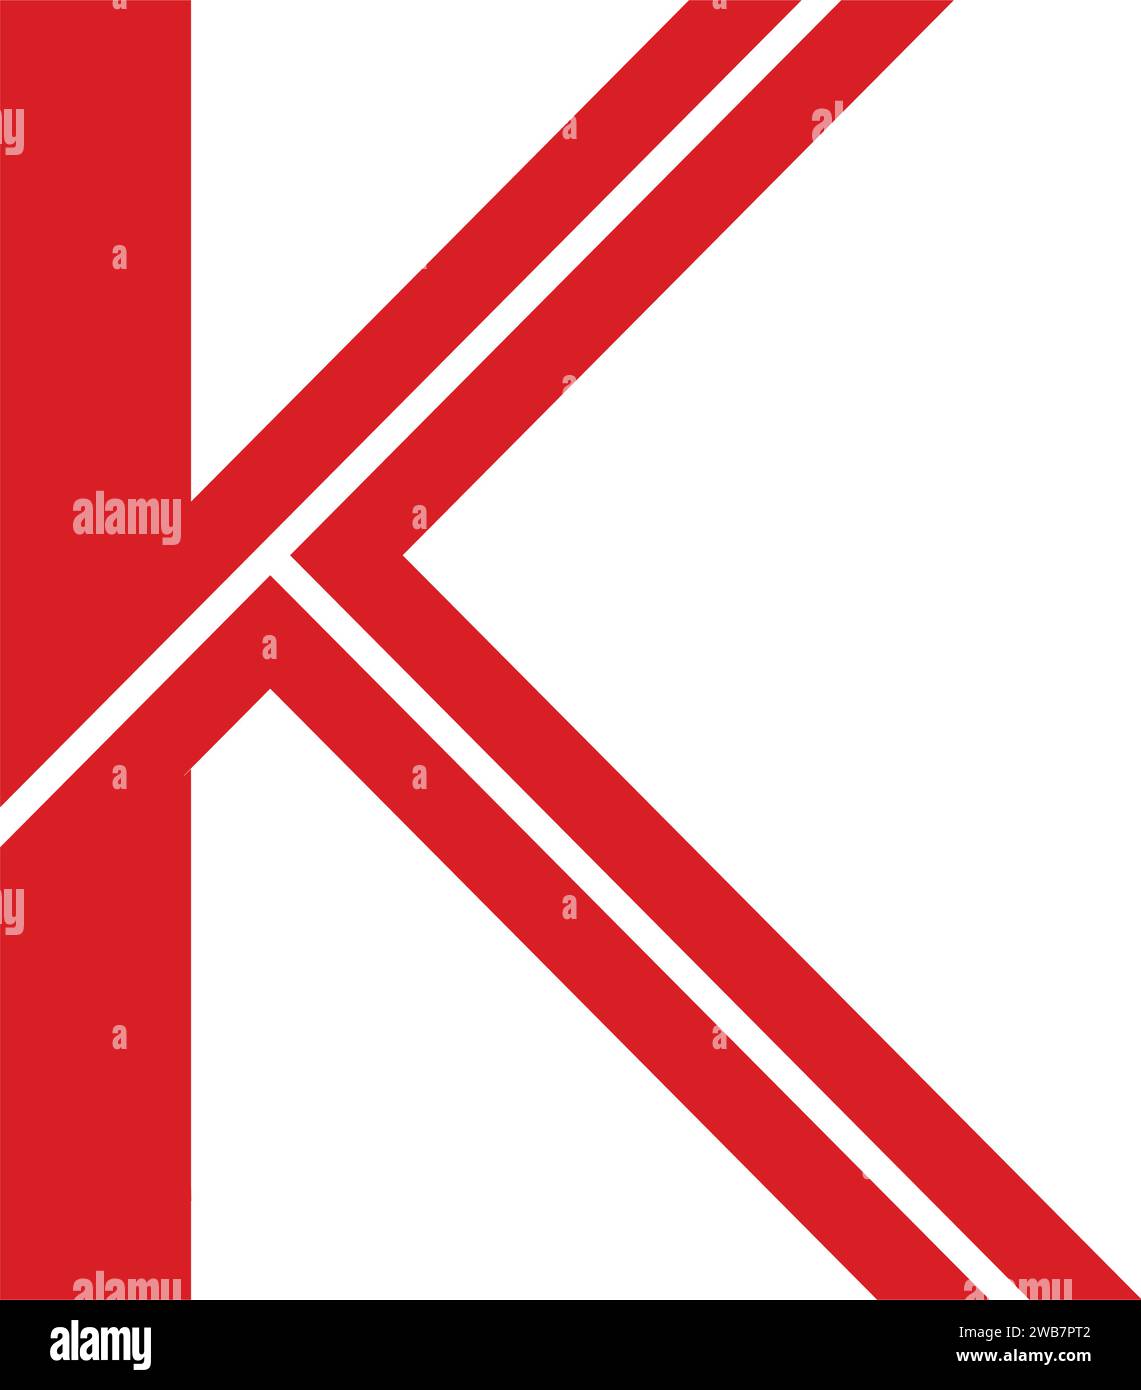 letter k logo icon vector illustration design Stock Vector